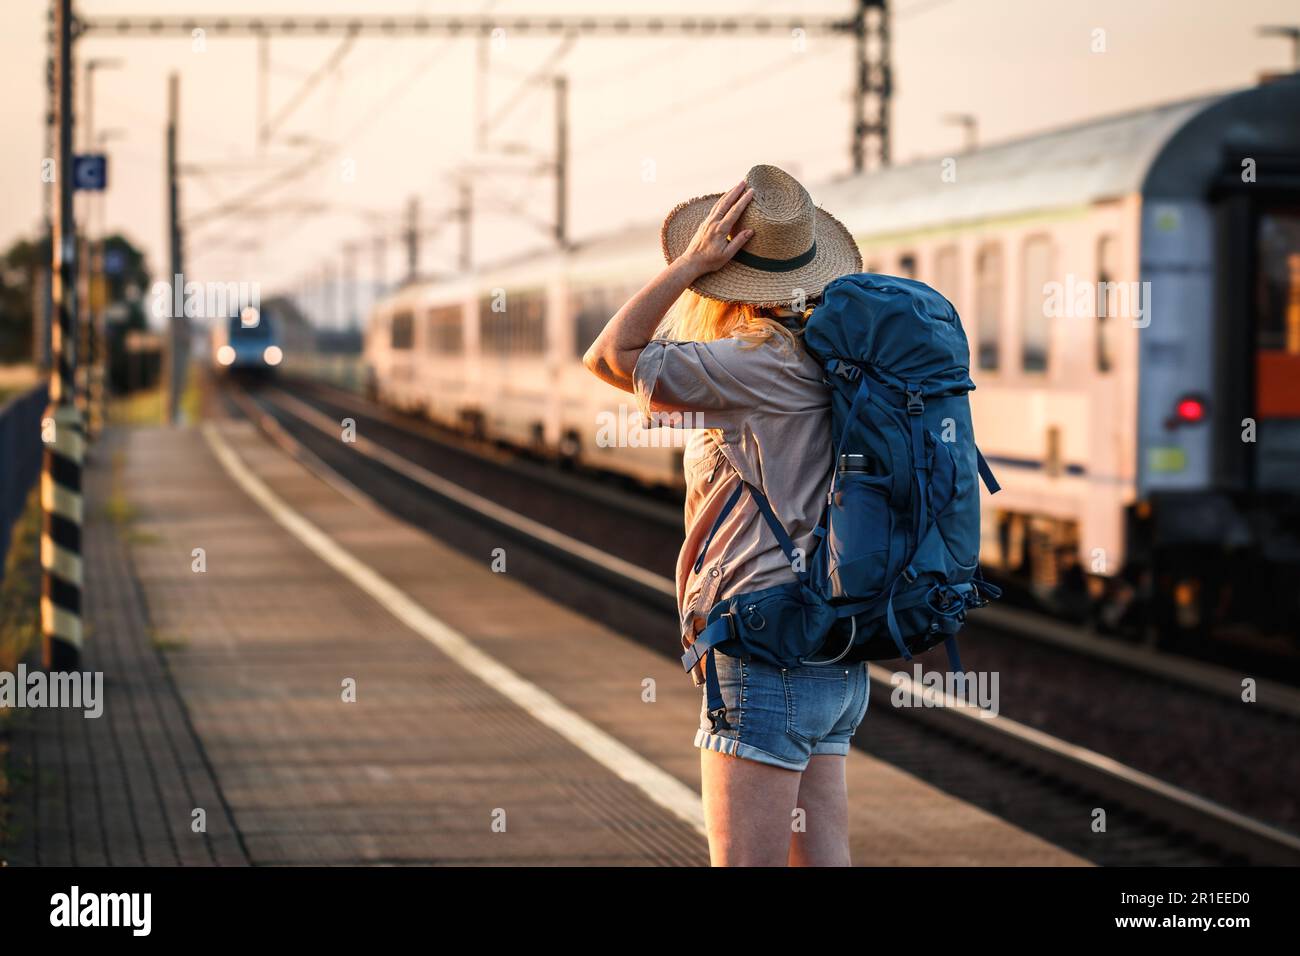 Fahren Sie mit dem Zug. Eine Frau, die am Bahnhof steht und auf den ankommenden Zug schaut Stockfoto